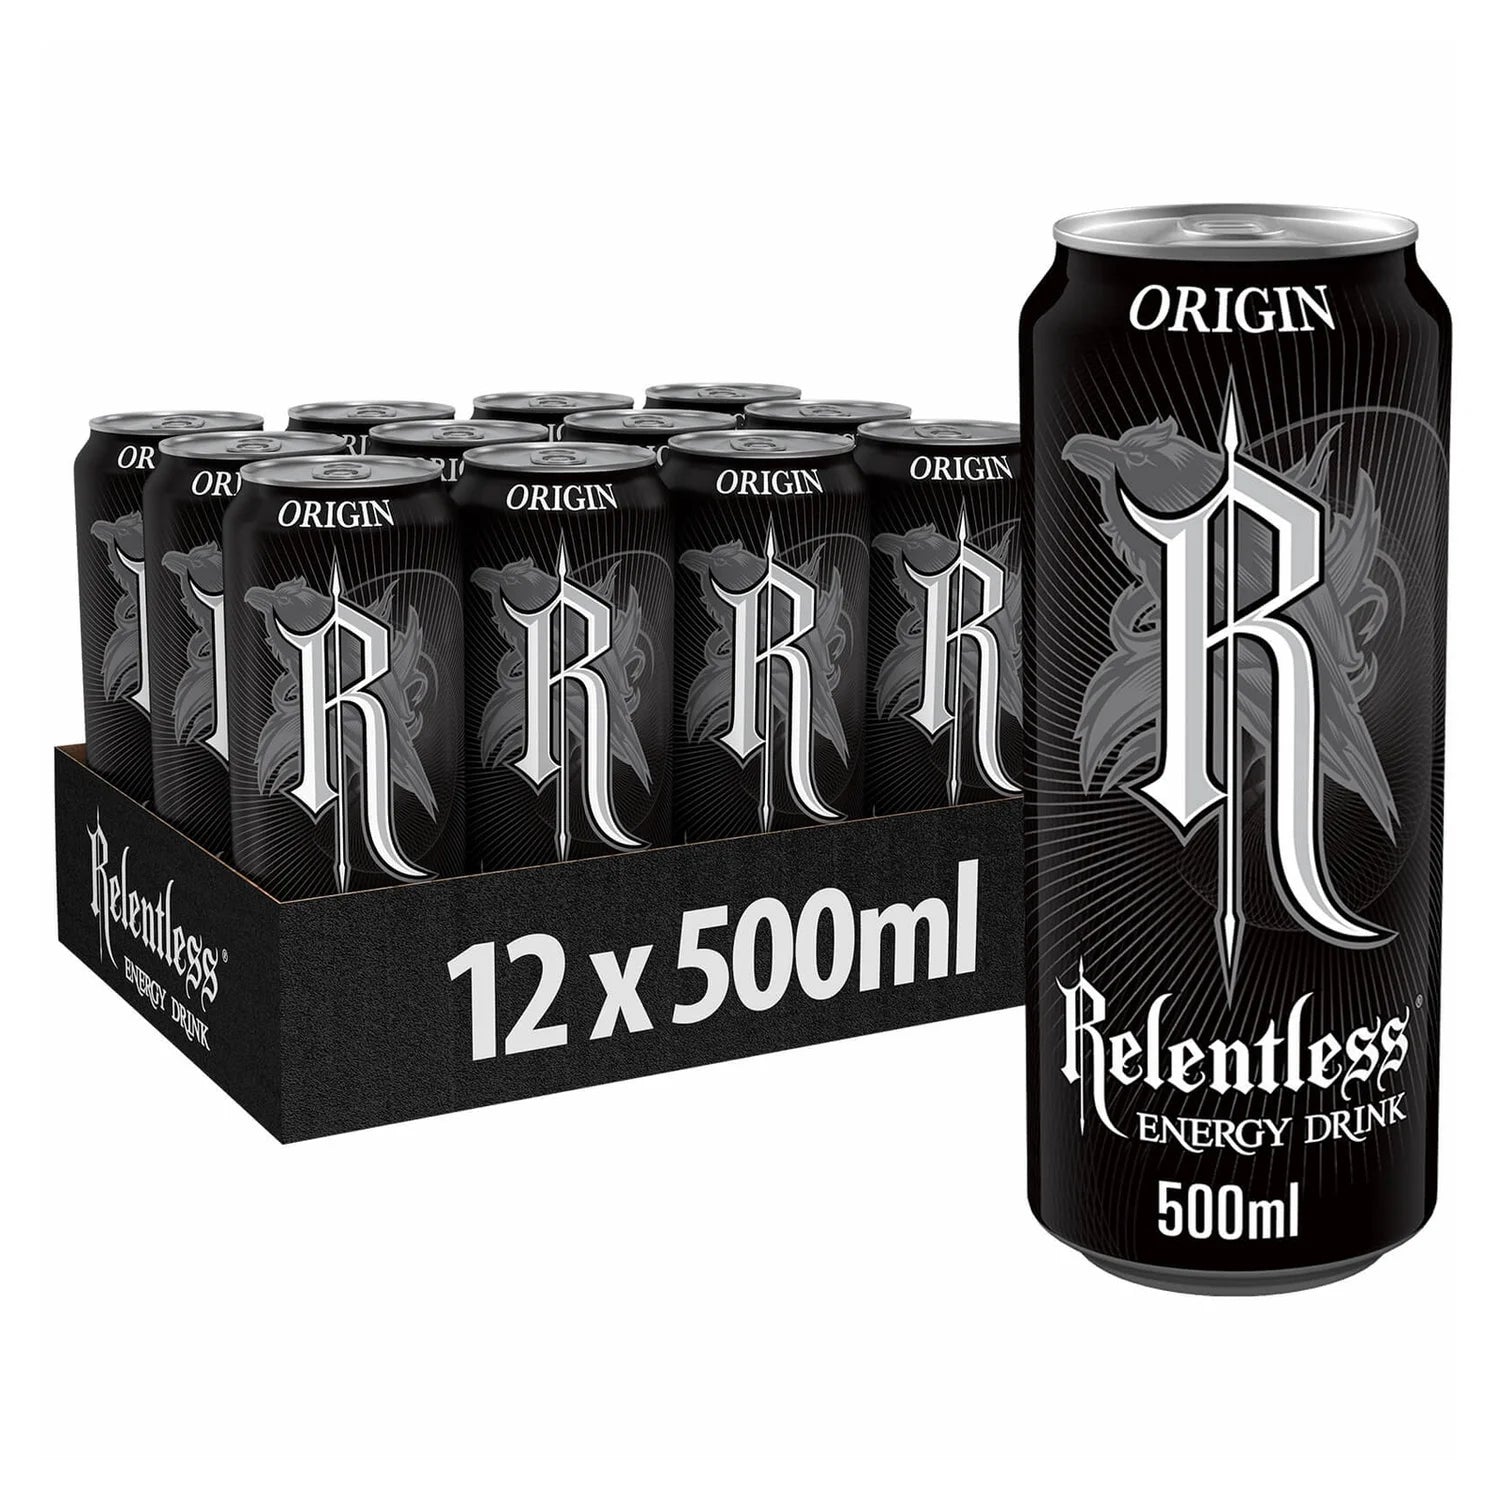 Relentless Origin Energy Drink - 500ml - Case of 12